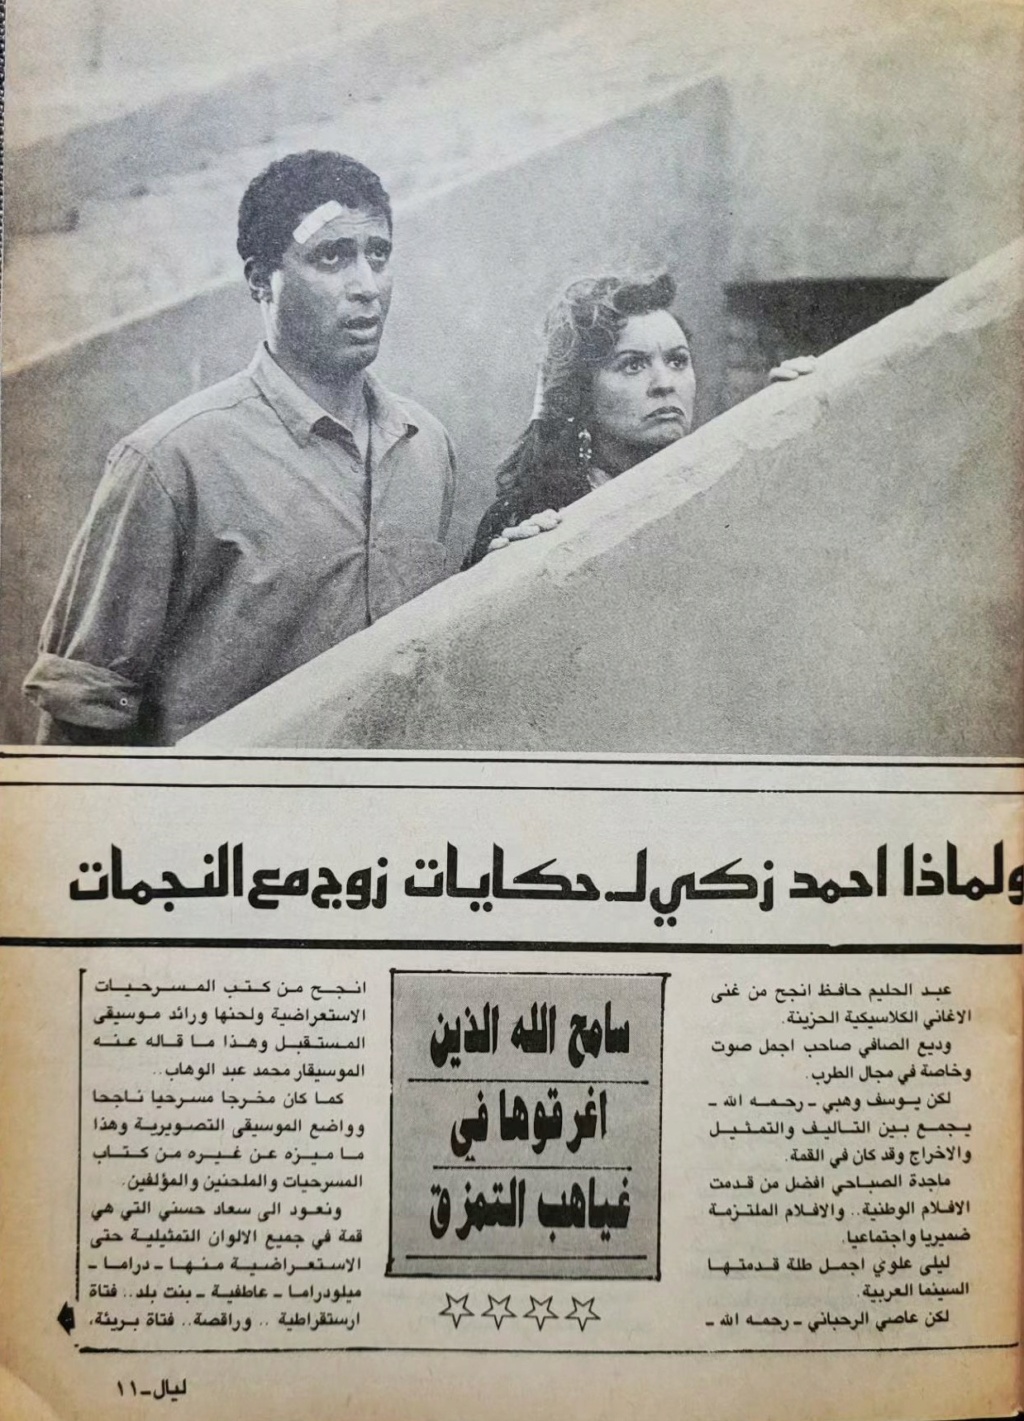 مقال صحفي : مطلوب انقاذ سعاد حسني 1988 م 328